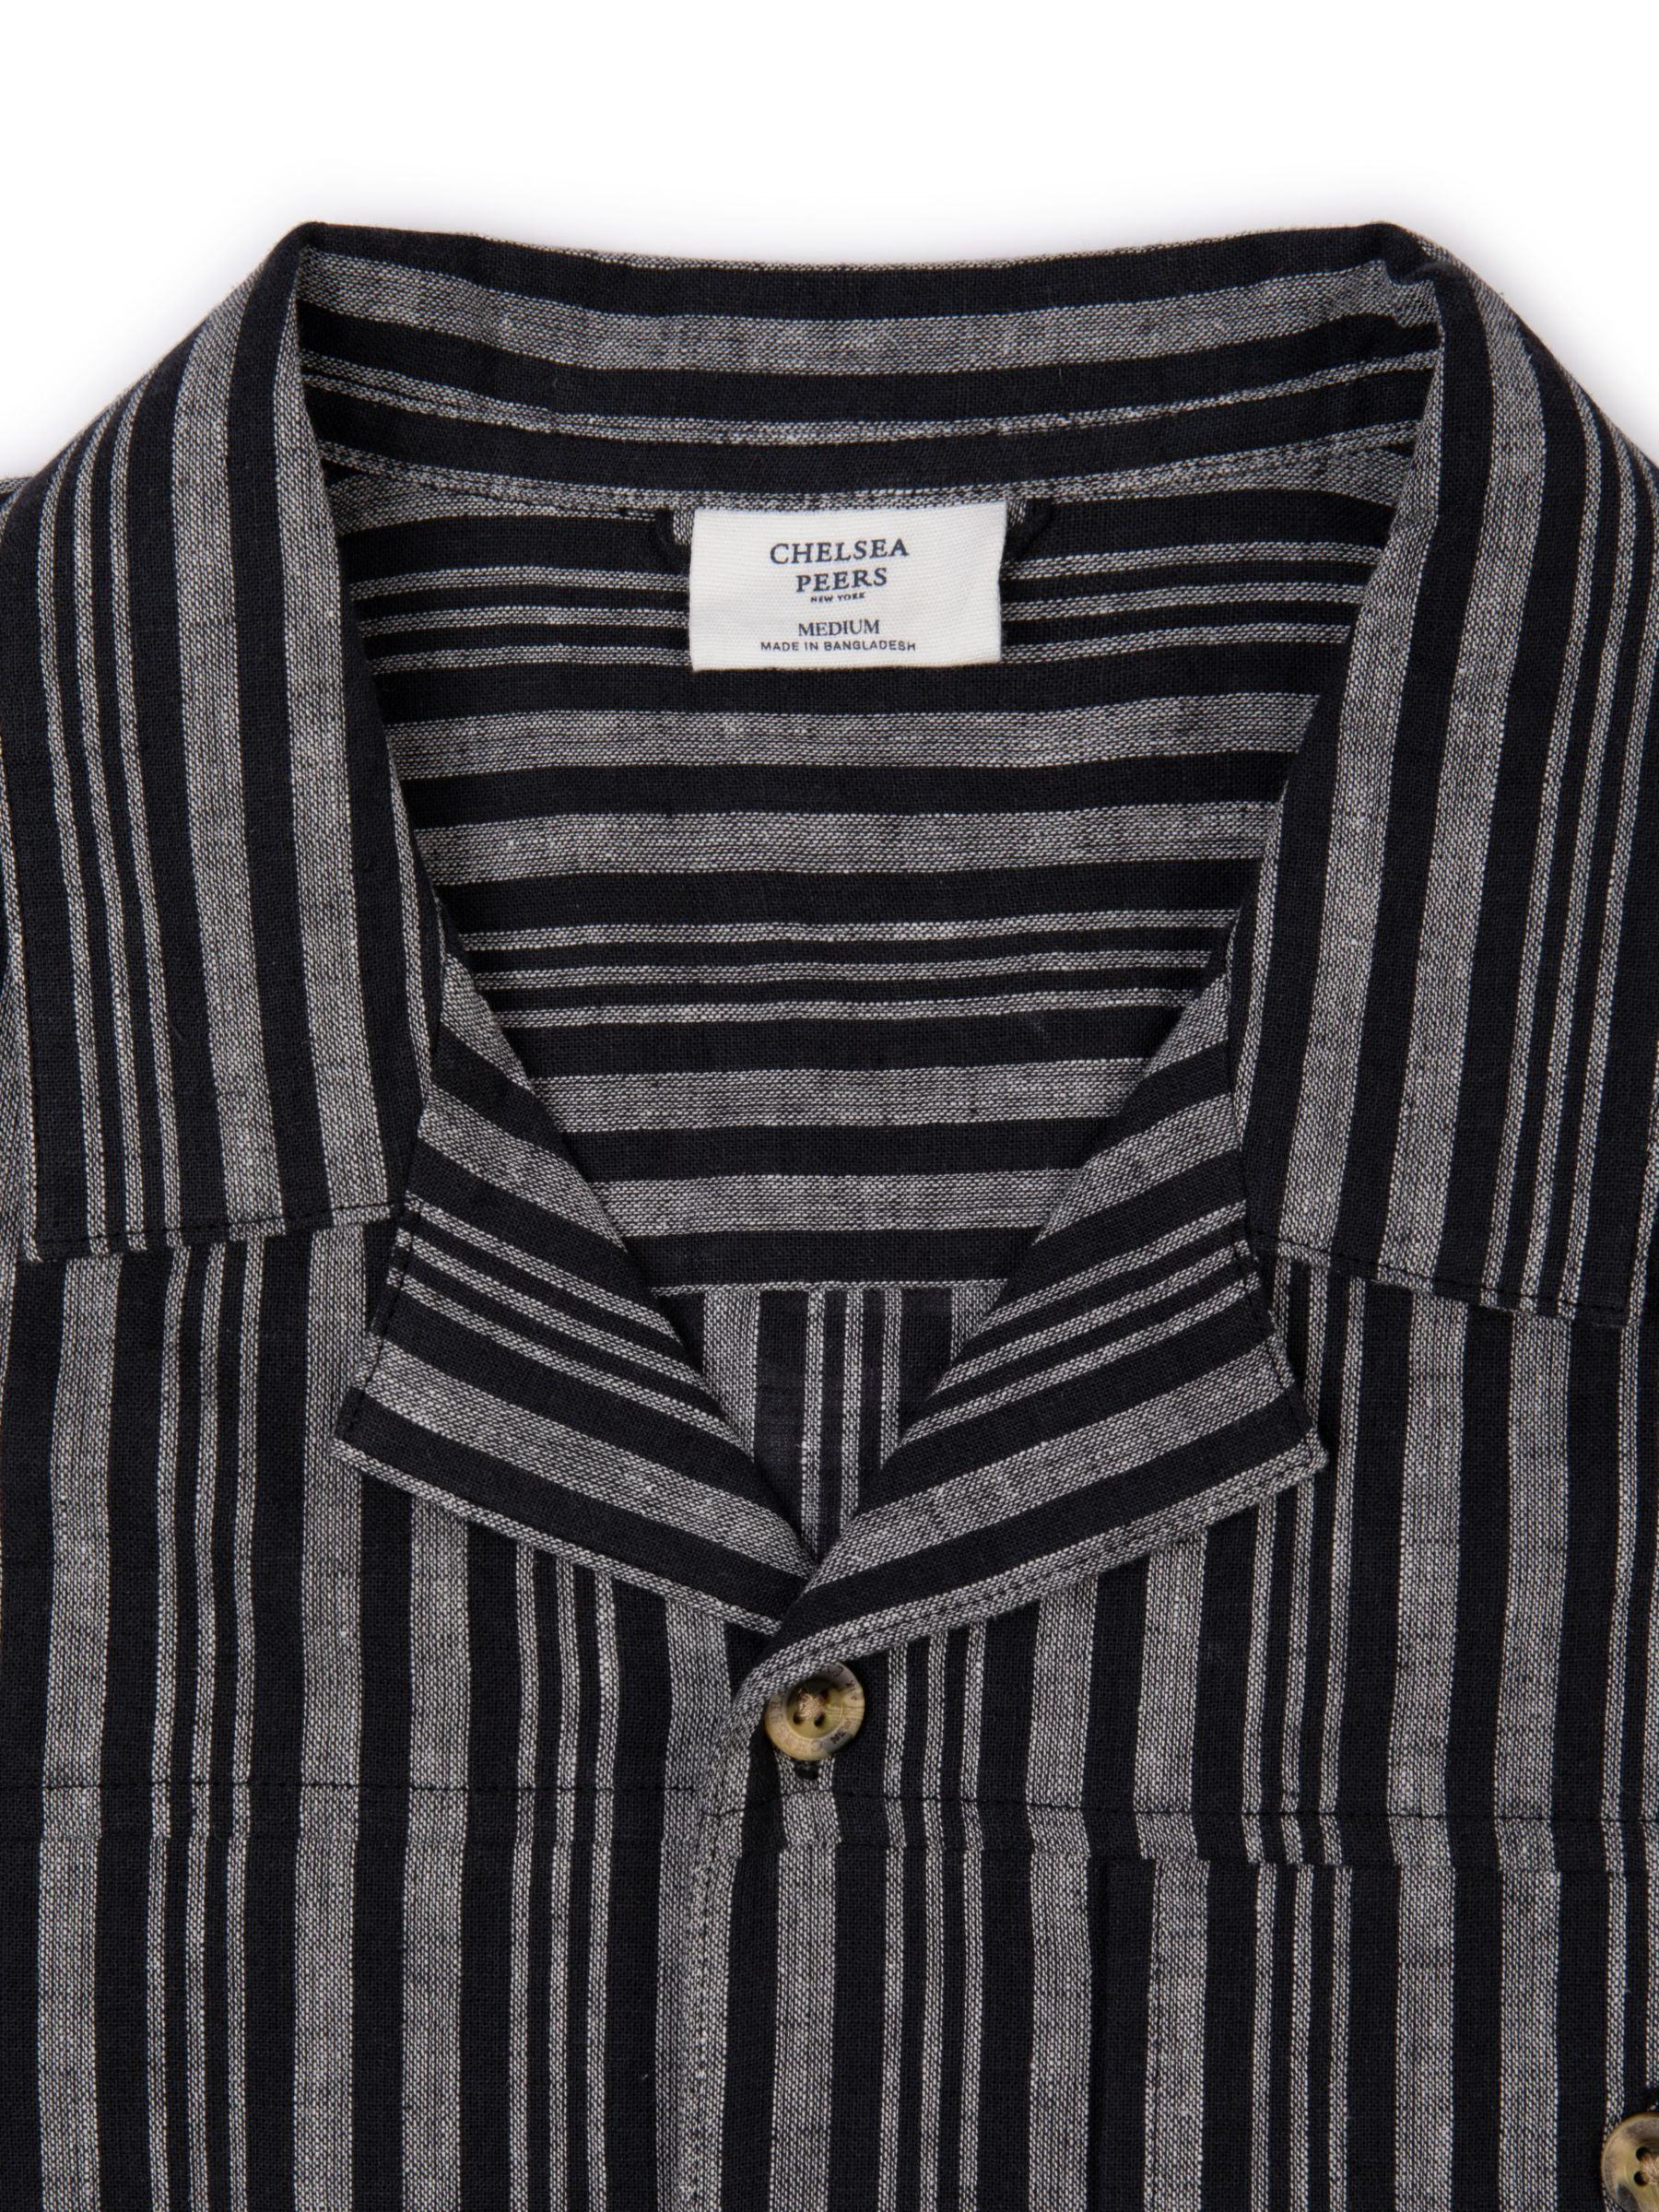 Chelsea Peers Linen Blend Stripe Shirt, Black/White, L